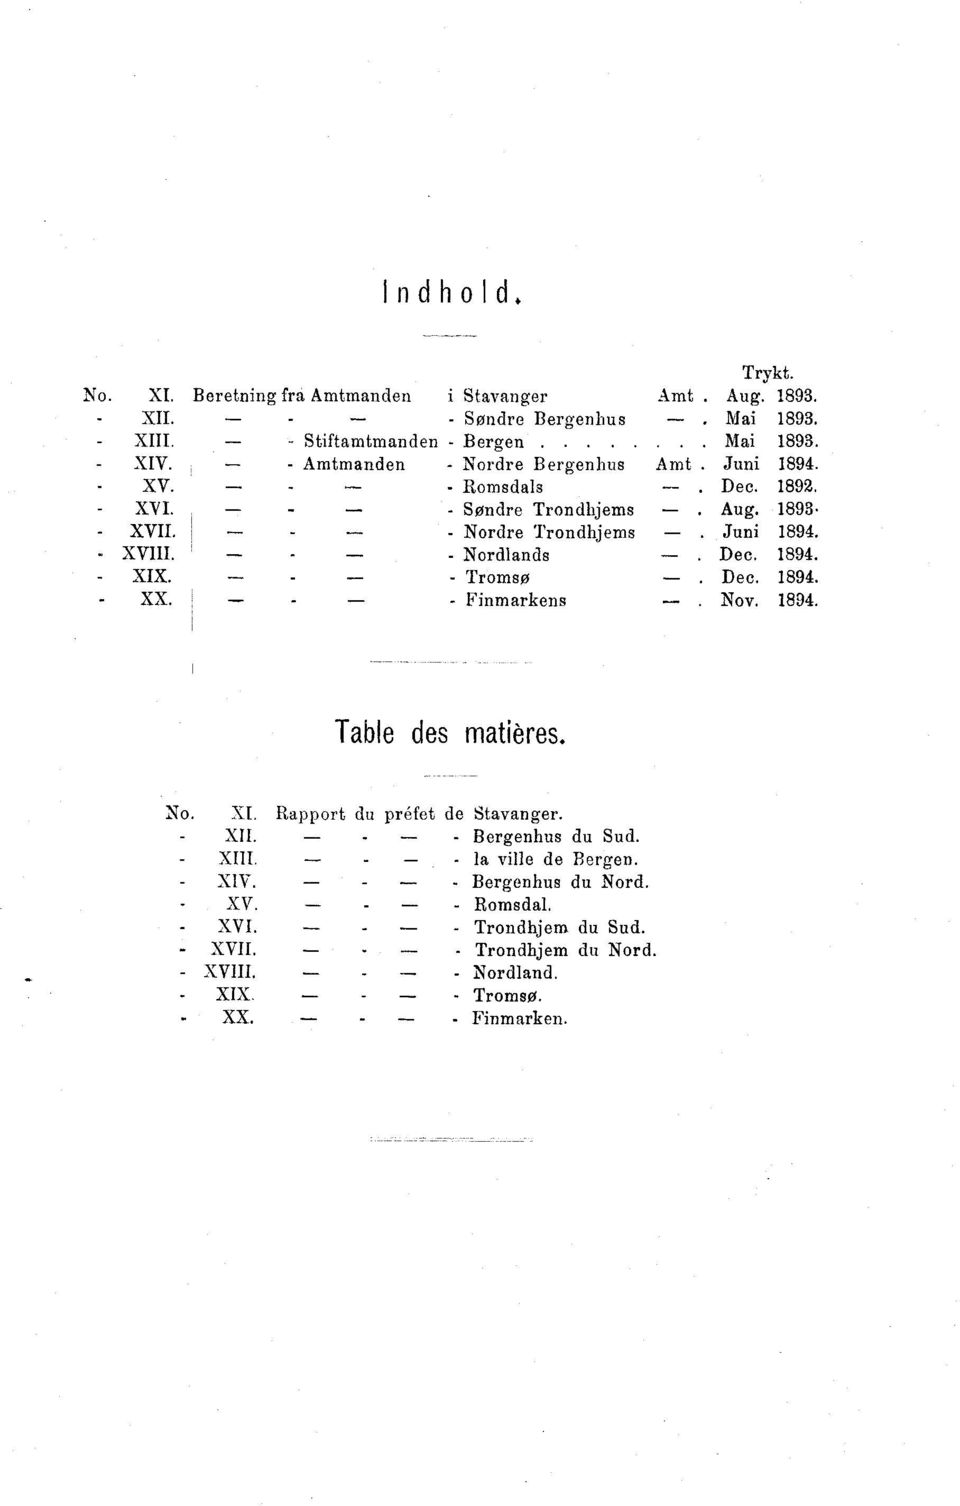 1893 -- --- - Nordre Trondhjems Juni 1894. - - Nordlands Dec. 1894. - - Tromsø Dec. 1894. - -- - Finmarkens --- Nov. 1894. Table des matières. No. XI.